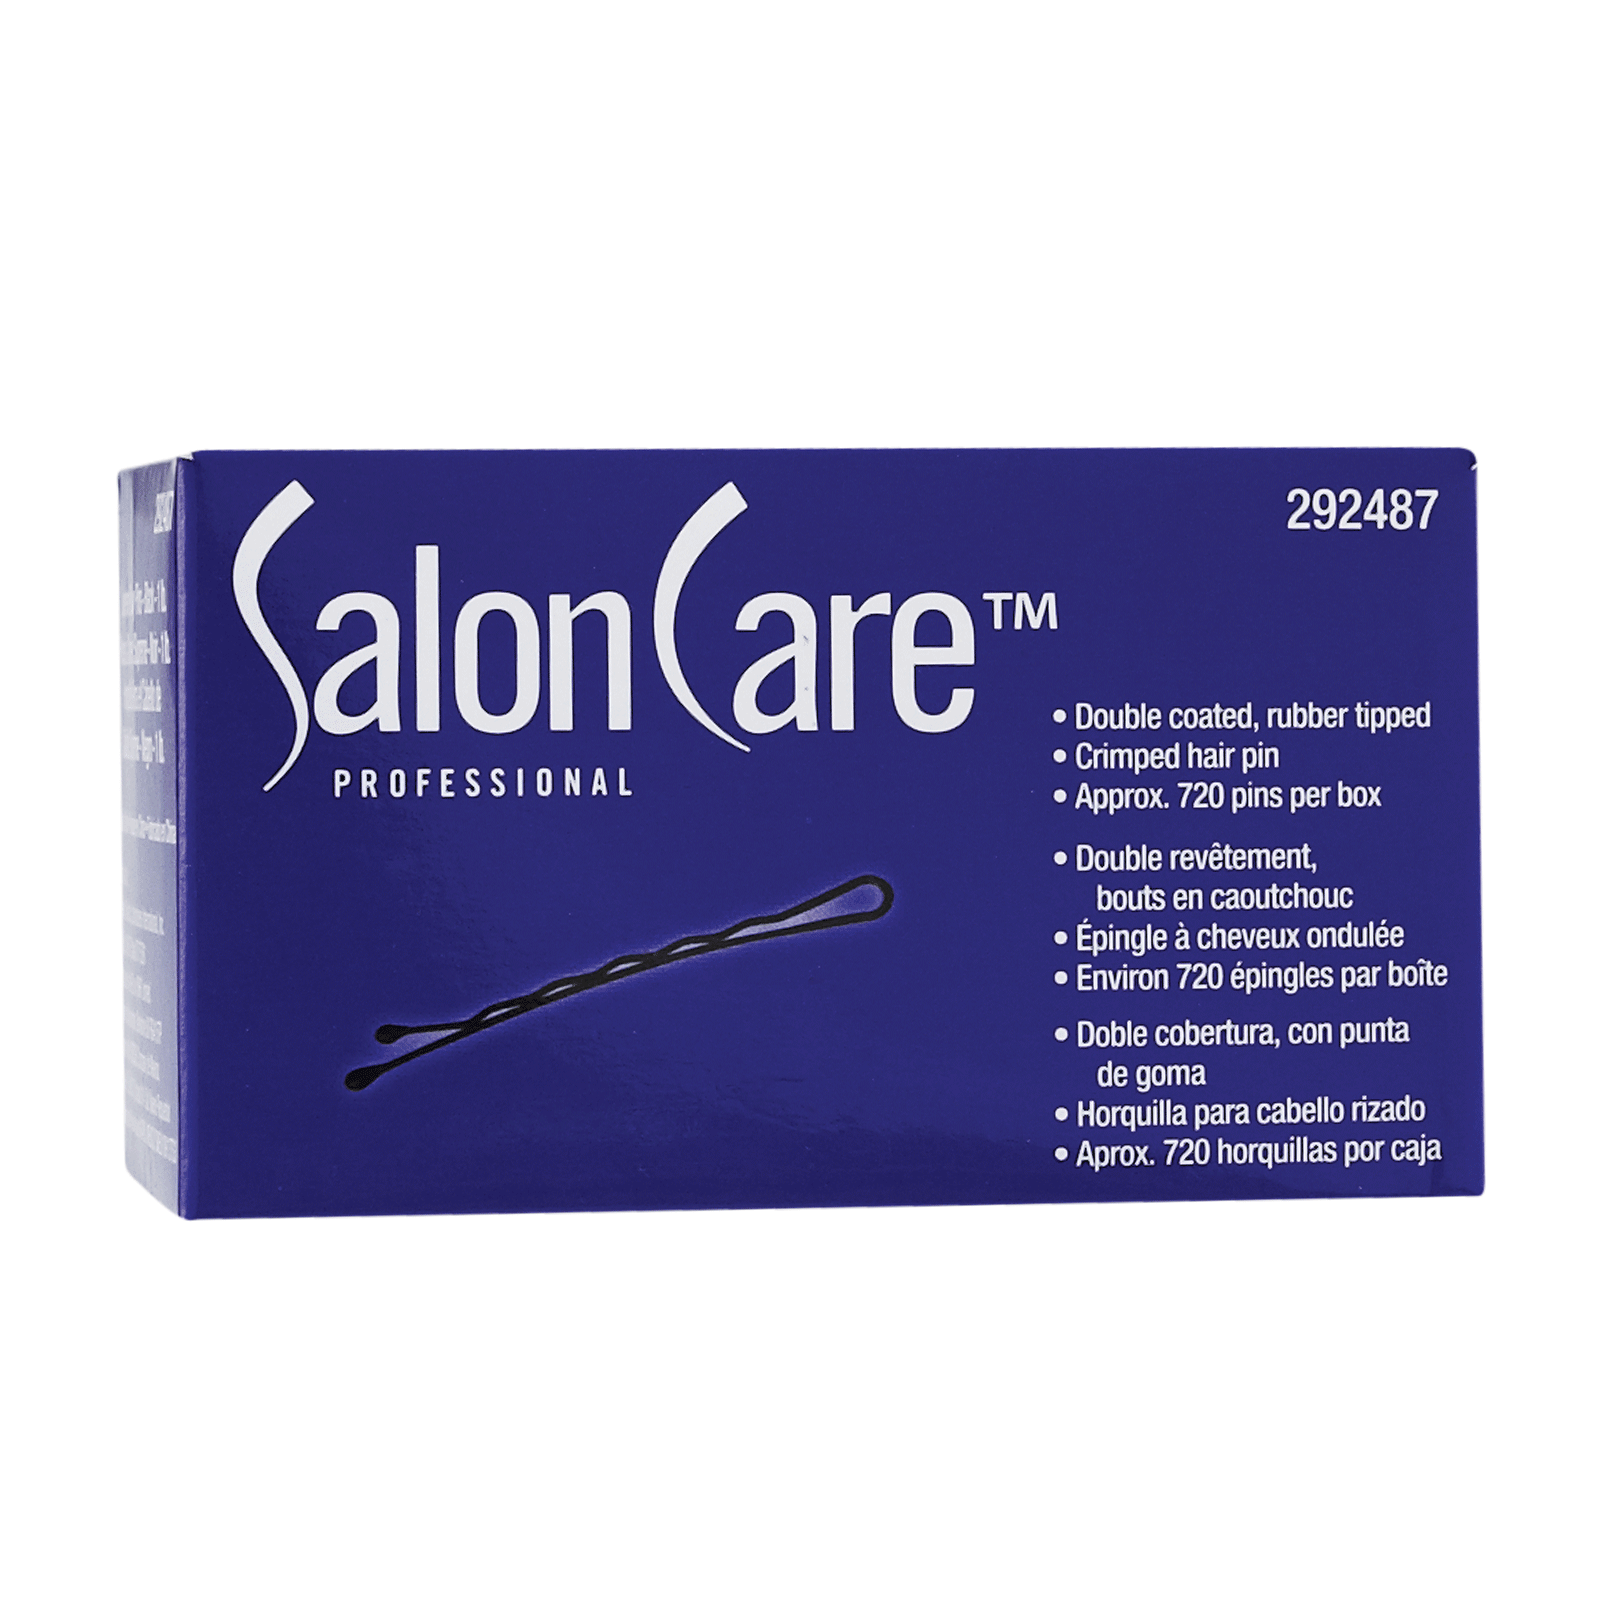 Salon Care Supreme Bobby Pins Black - 1 lb Box - Salon Care | CosmoProf